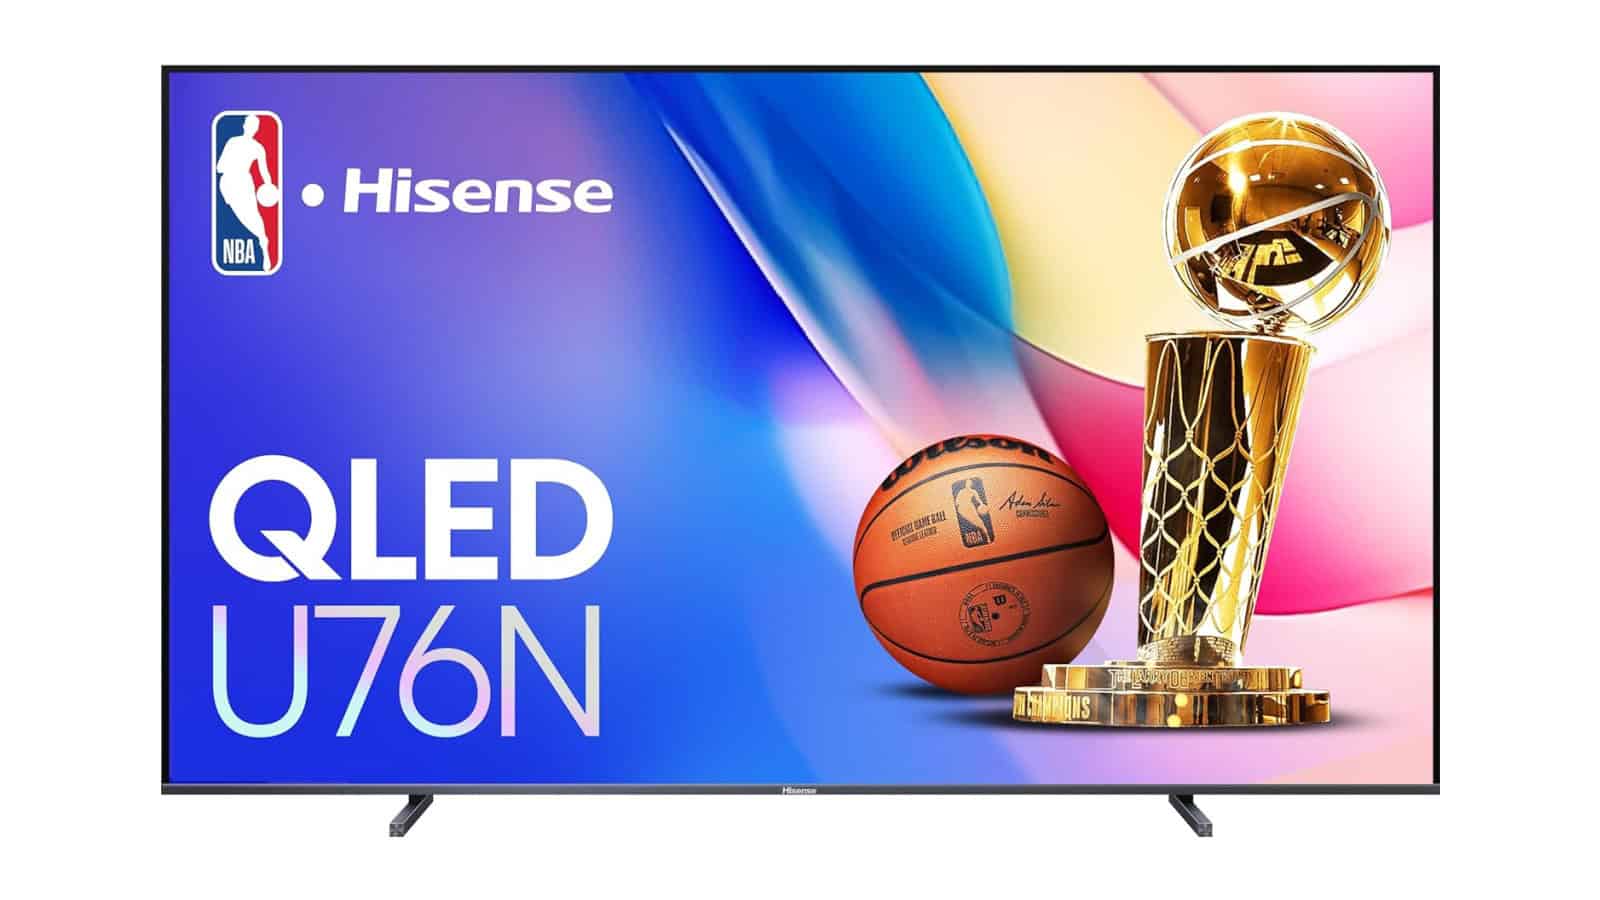 El increíblemente grande televisor de 100 pulgadas de Hisense se ha rebajado a 2.500 dólares